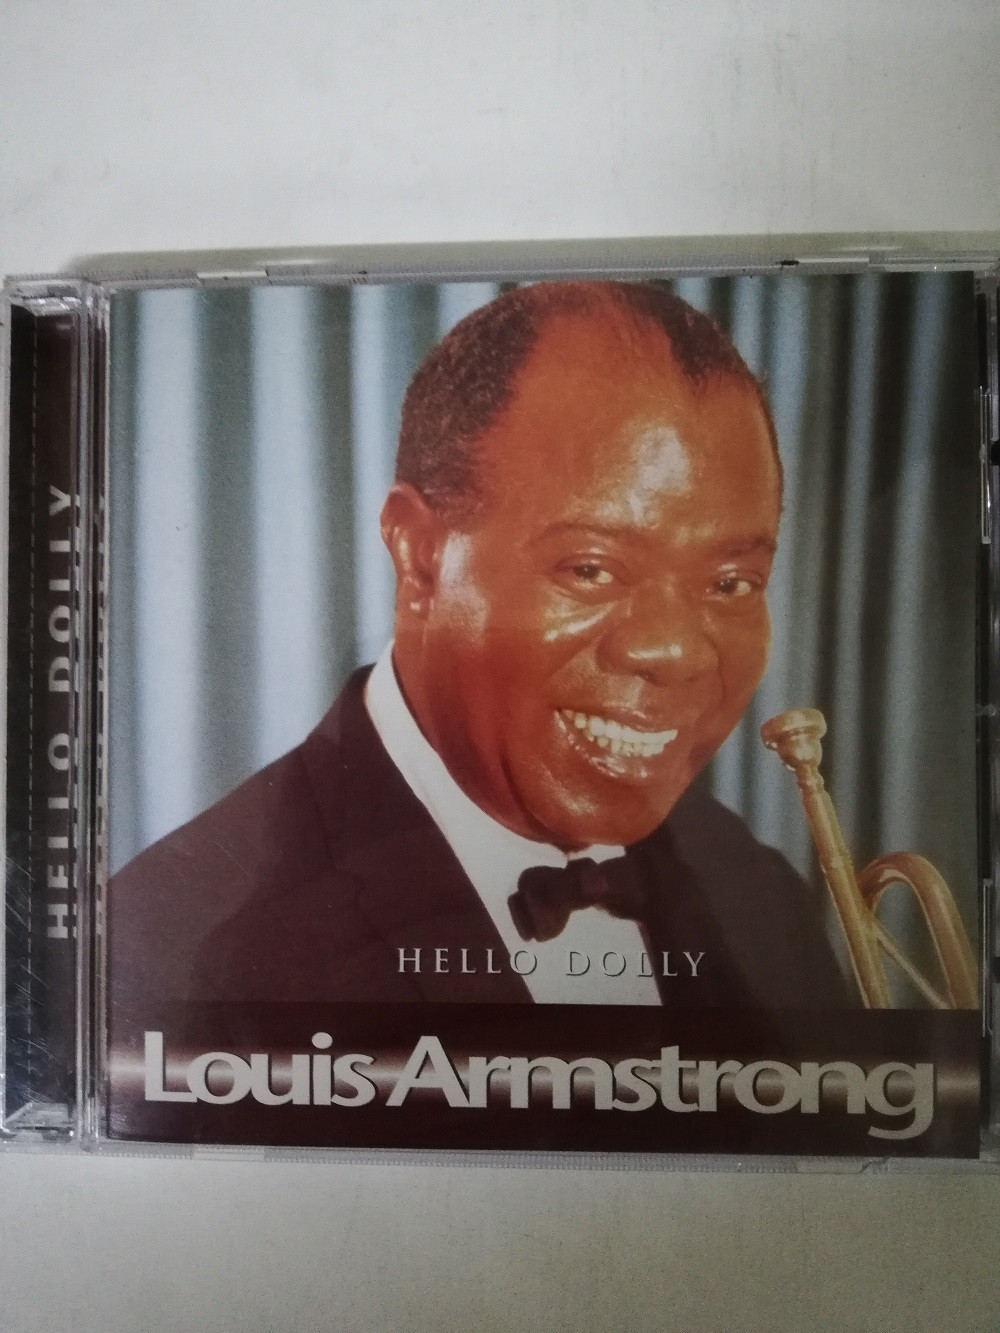 Imagen CD LOUIS ARMSTRONG - HELLO DOLLY